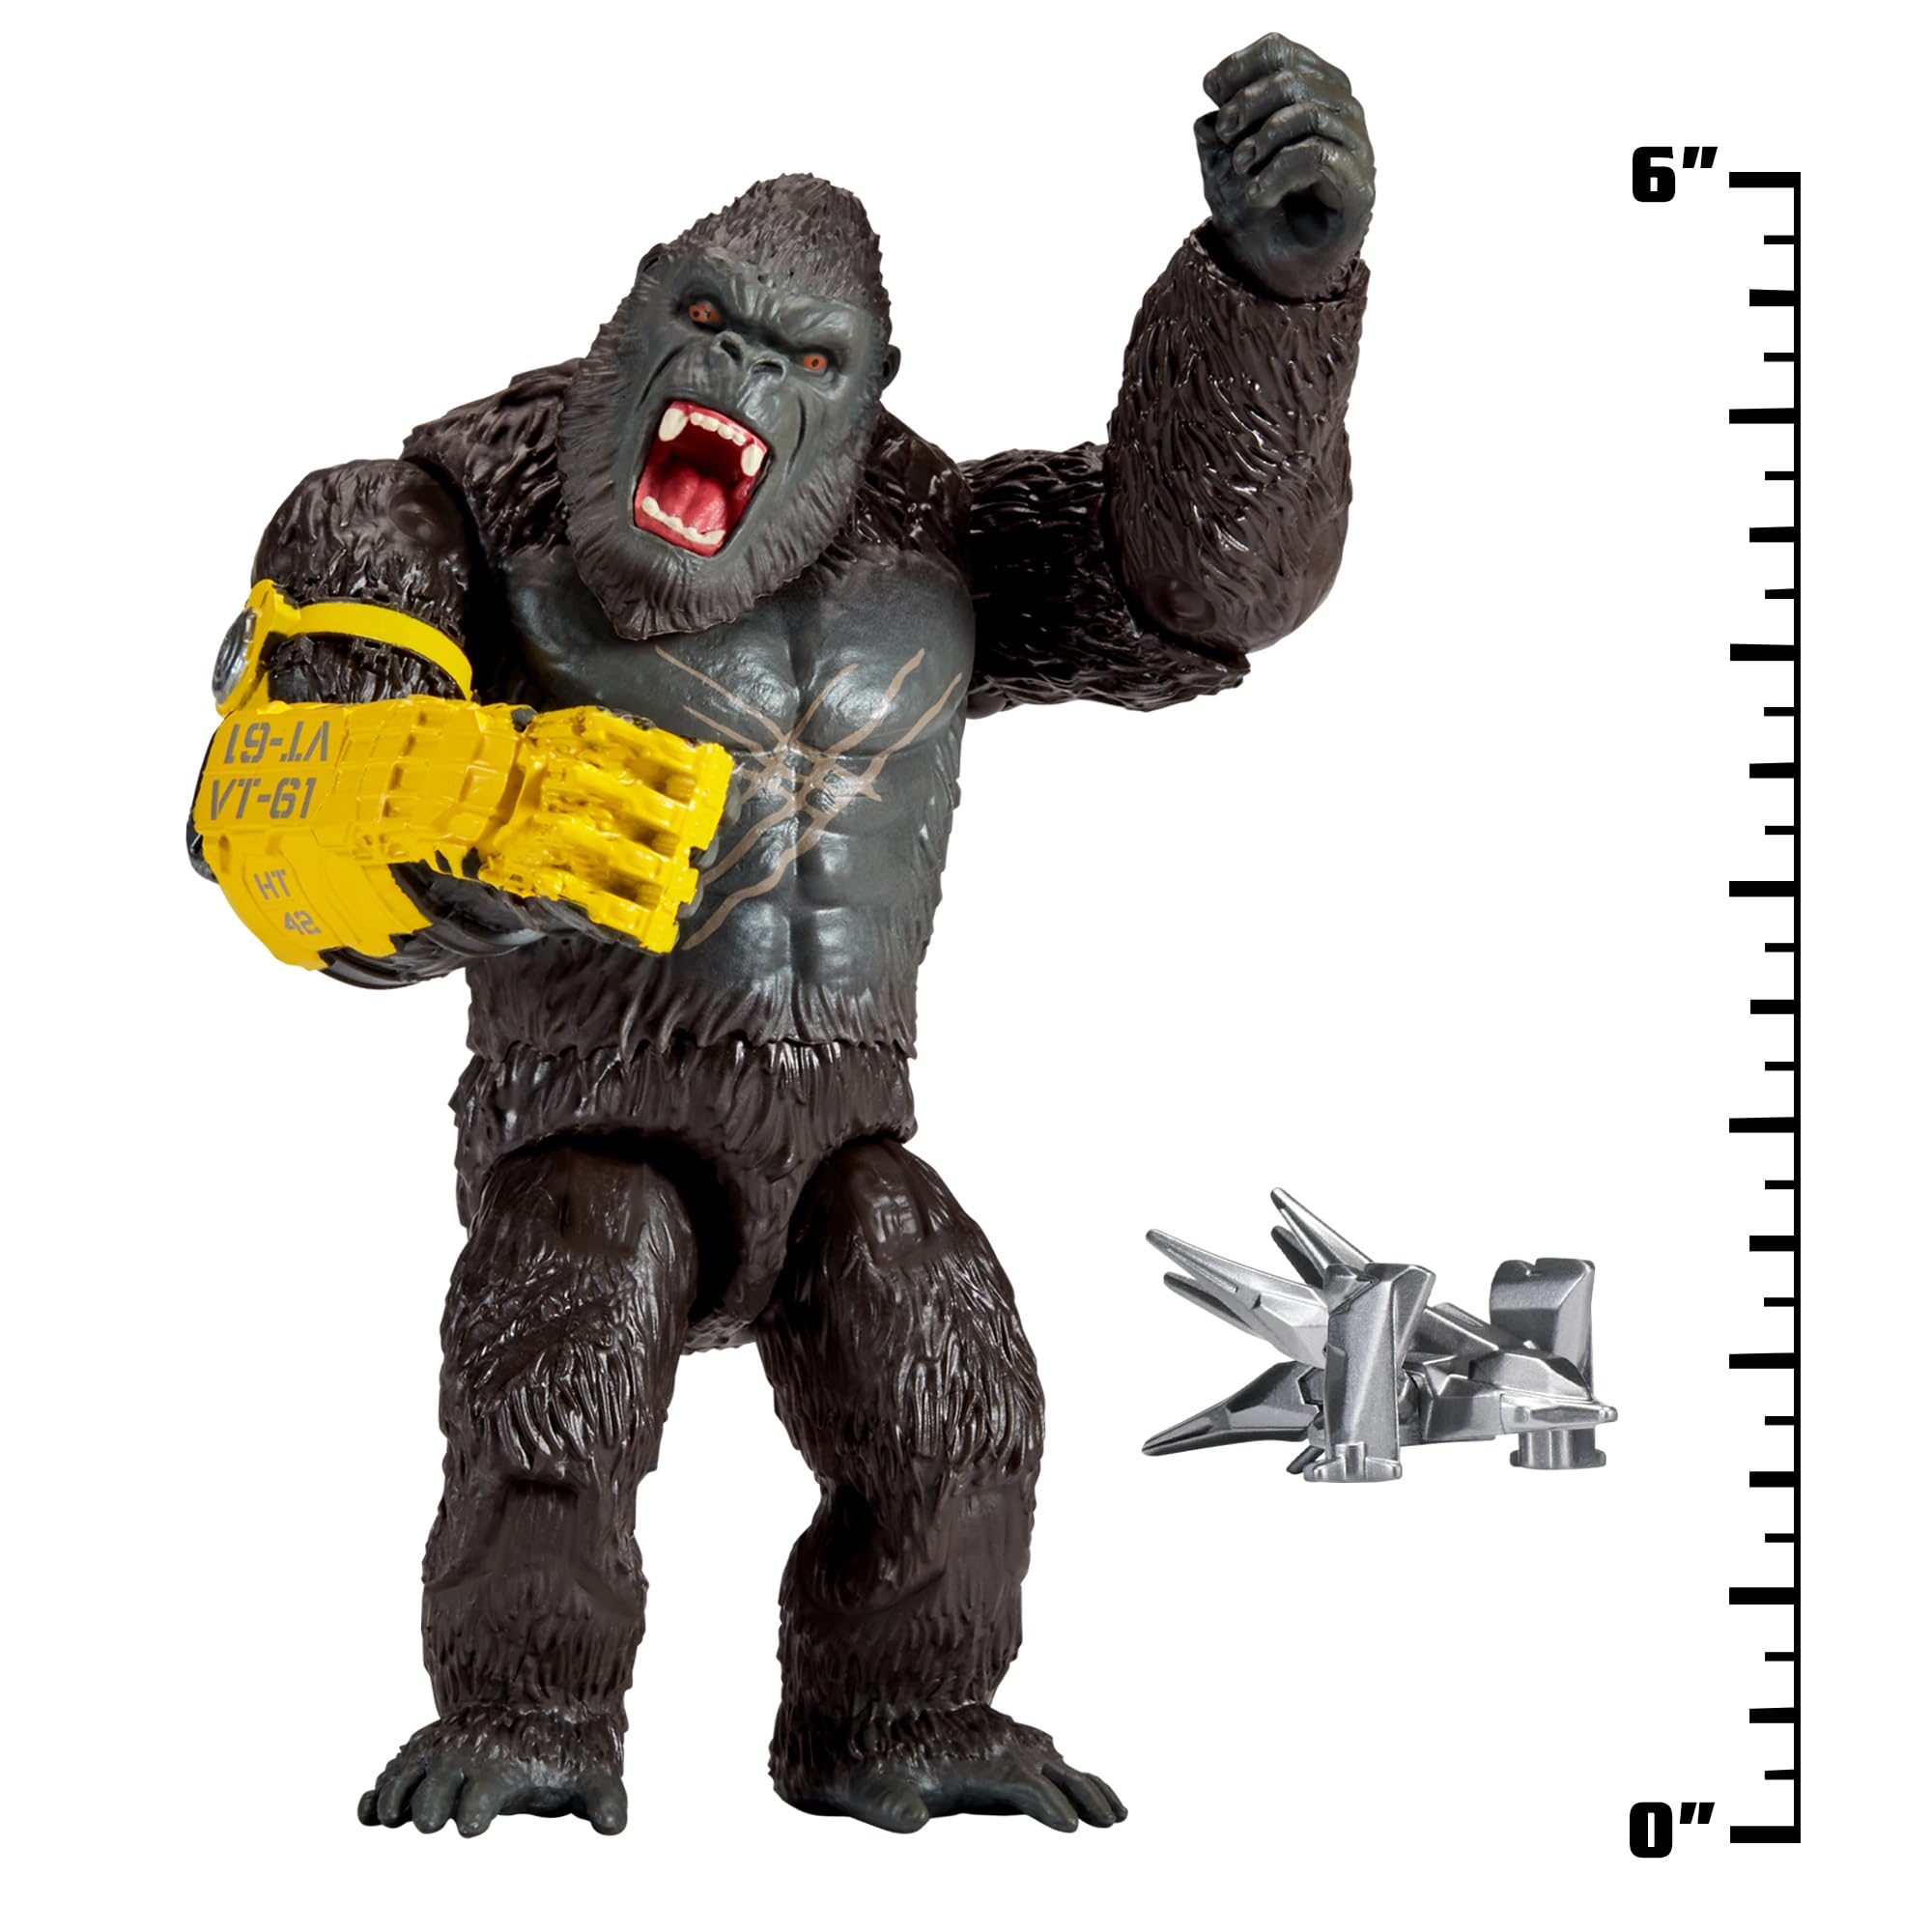 Godzilla x Kong 6” Kong w/B.E.A.S.T. Glove by Playmates Toys